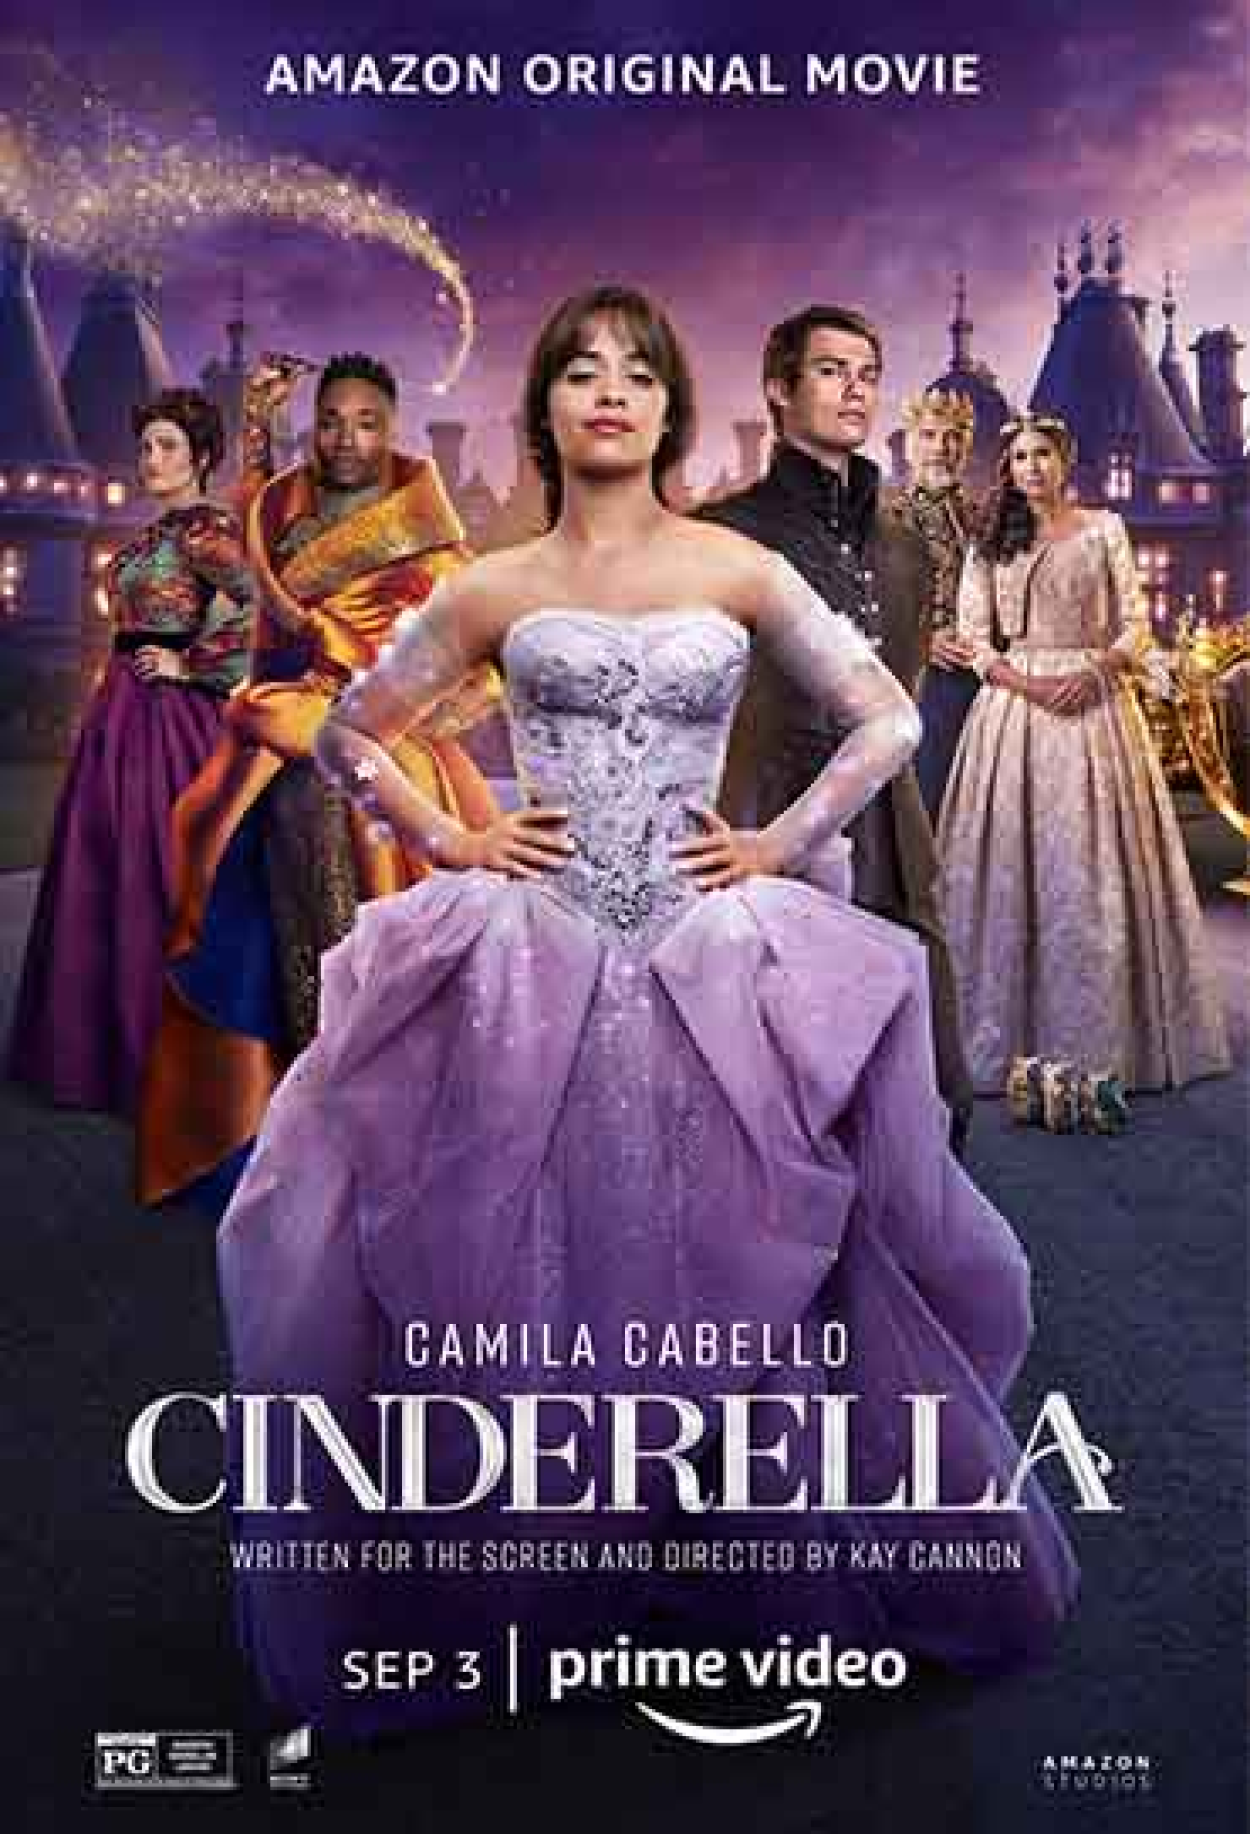 Cinderela (Filme), Trailer, Sinopse e Curiosidades - Cinema10